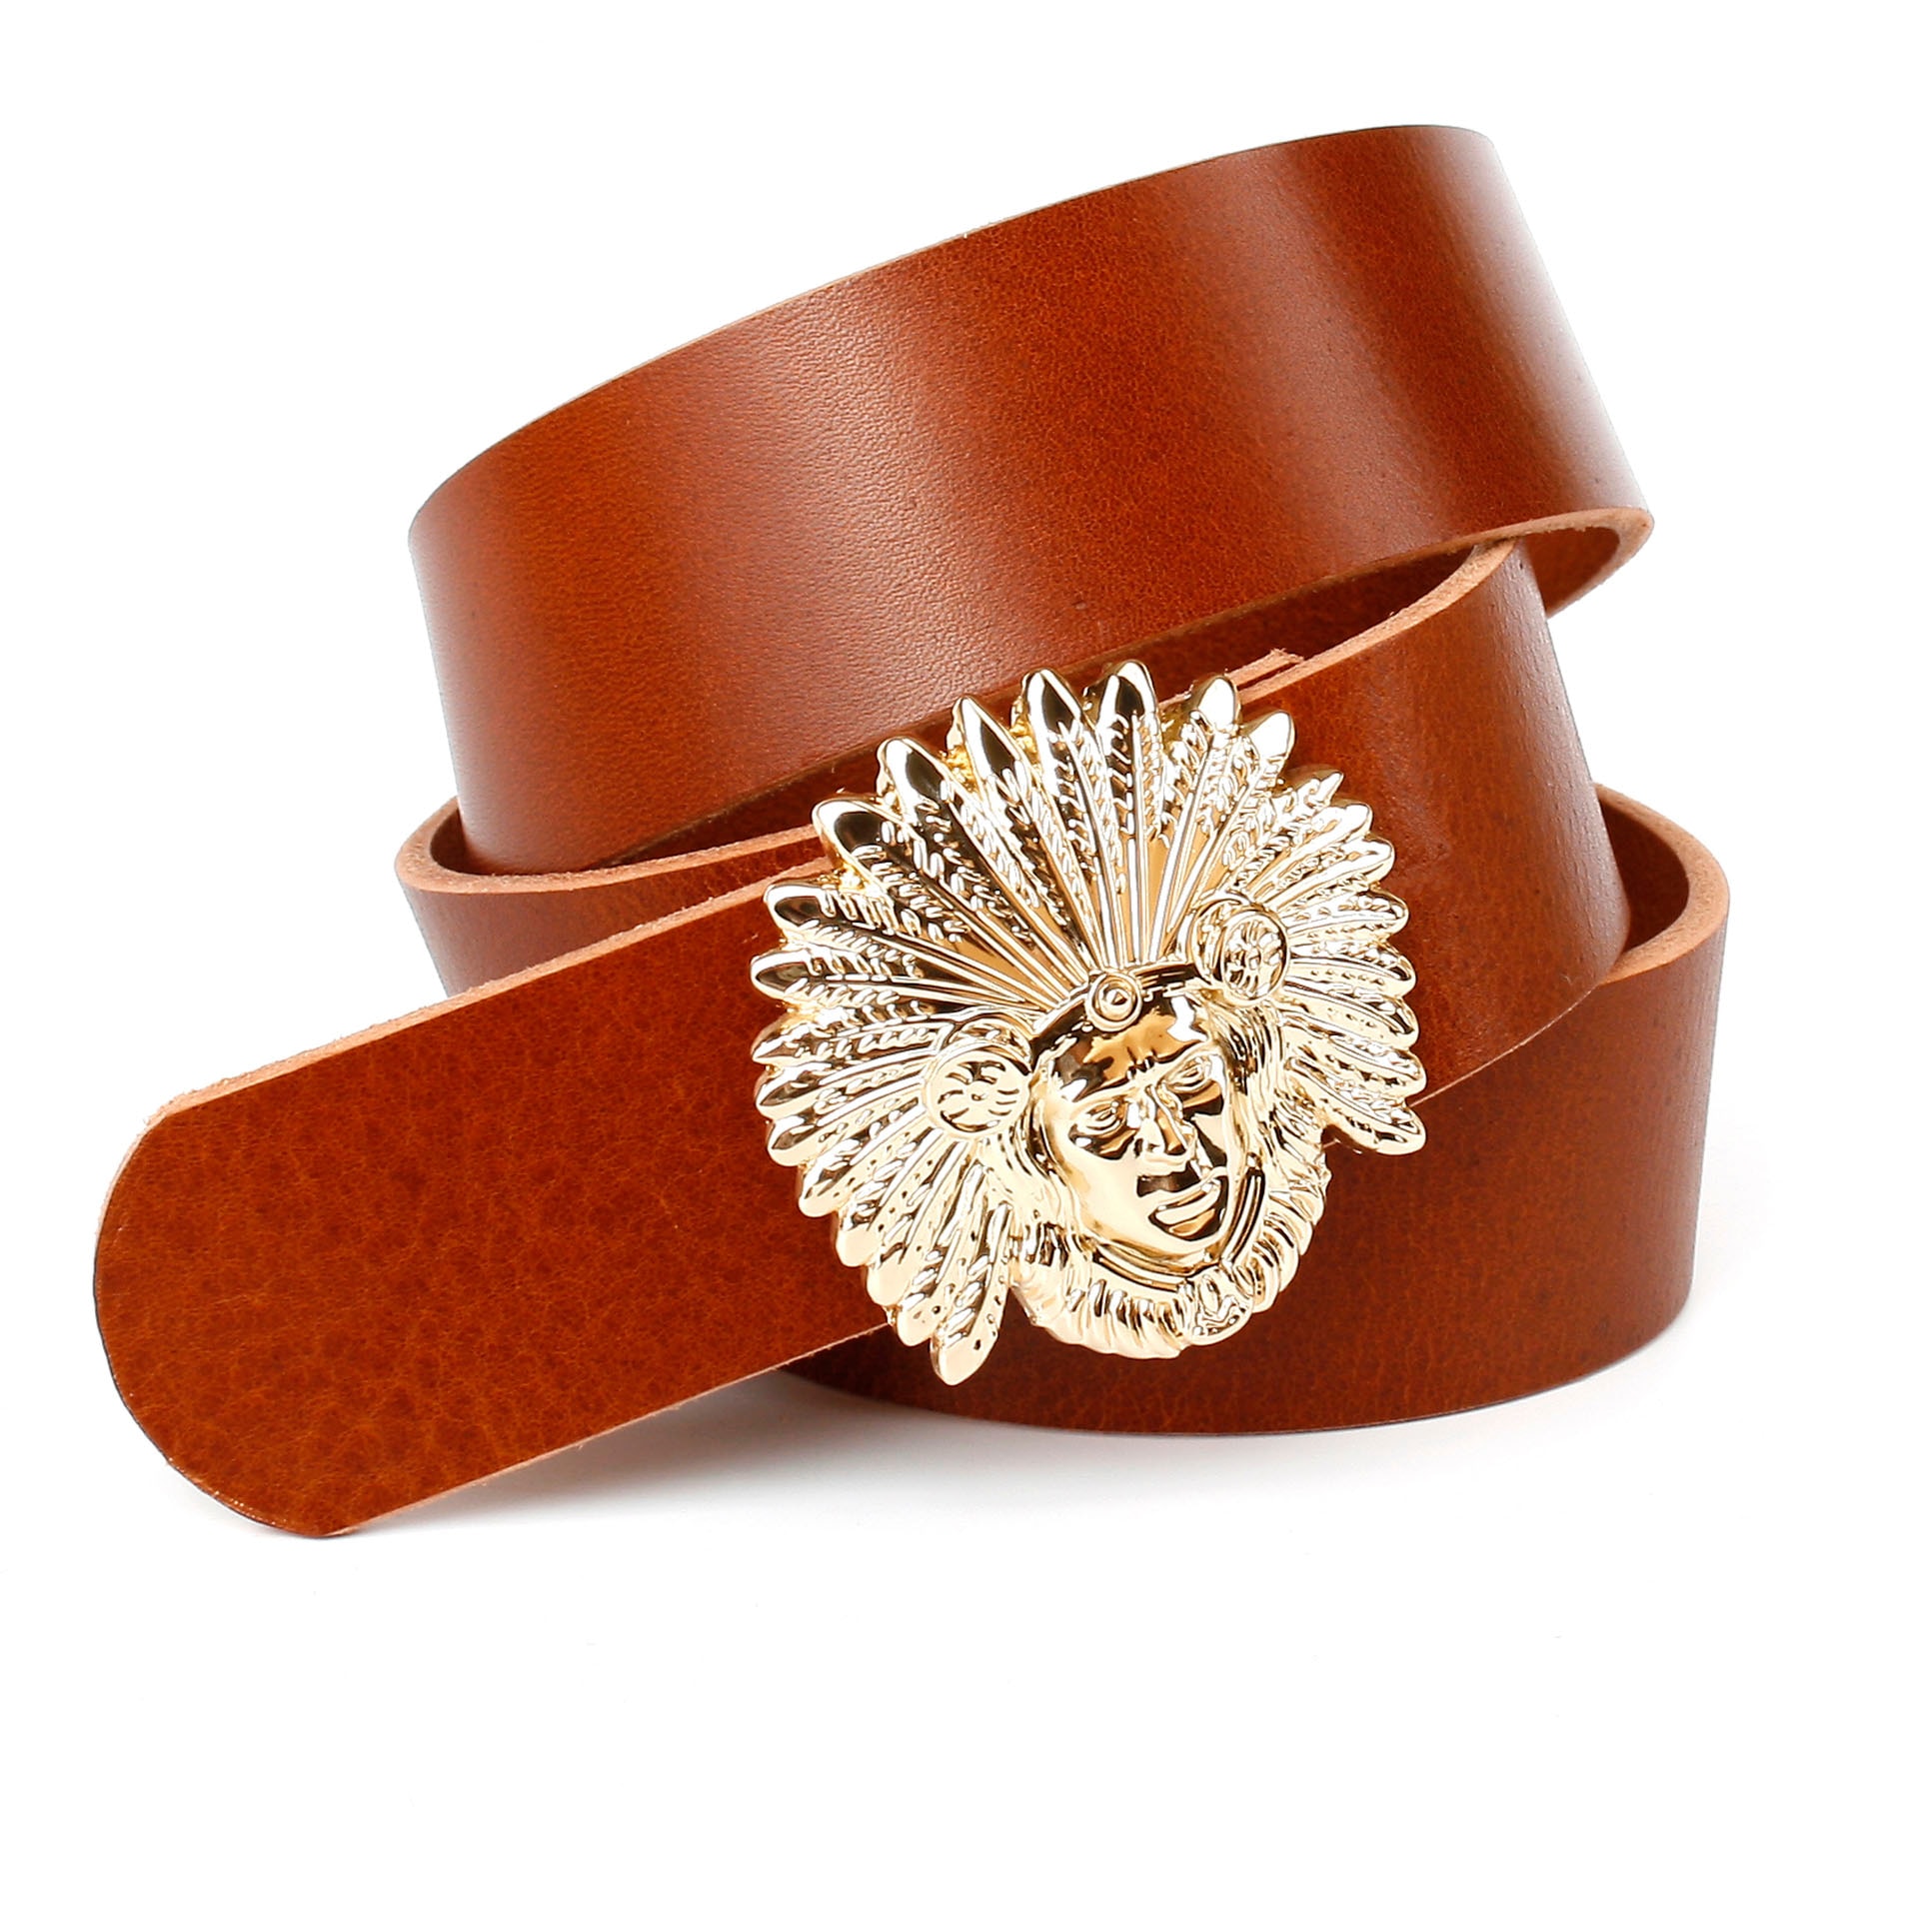 Anthoni Crown Ledergürtel, genarbt, mit glänzender Schließe bequem kaufen | Anzuggürtel